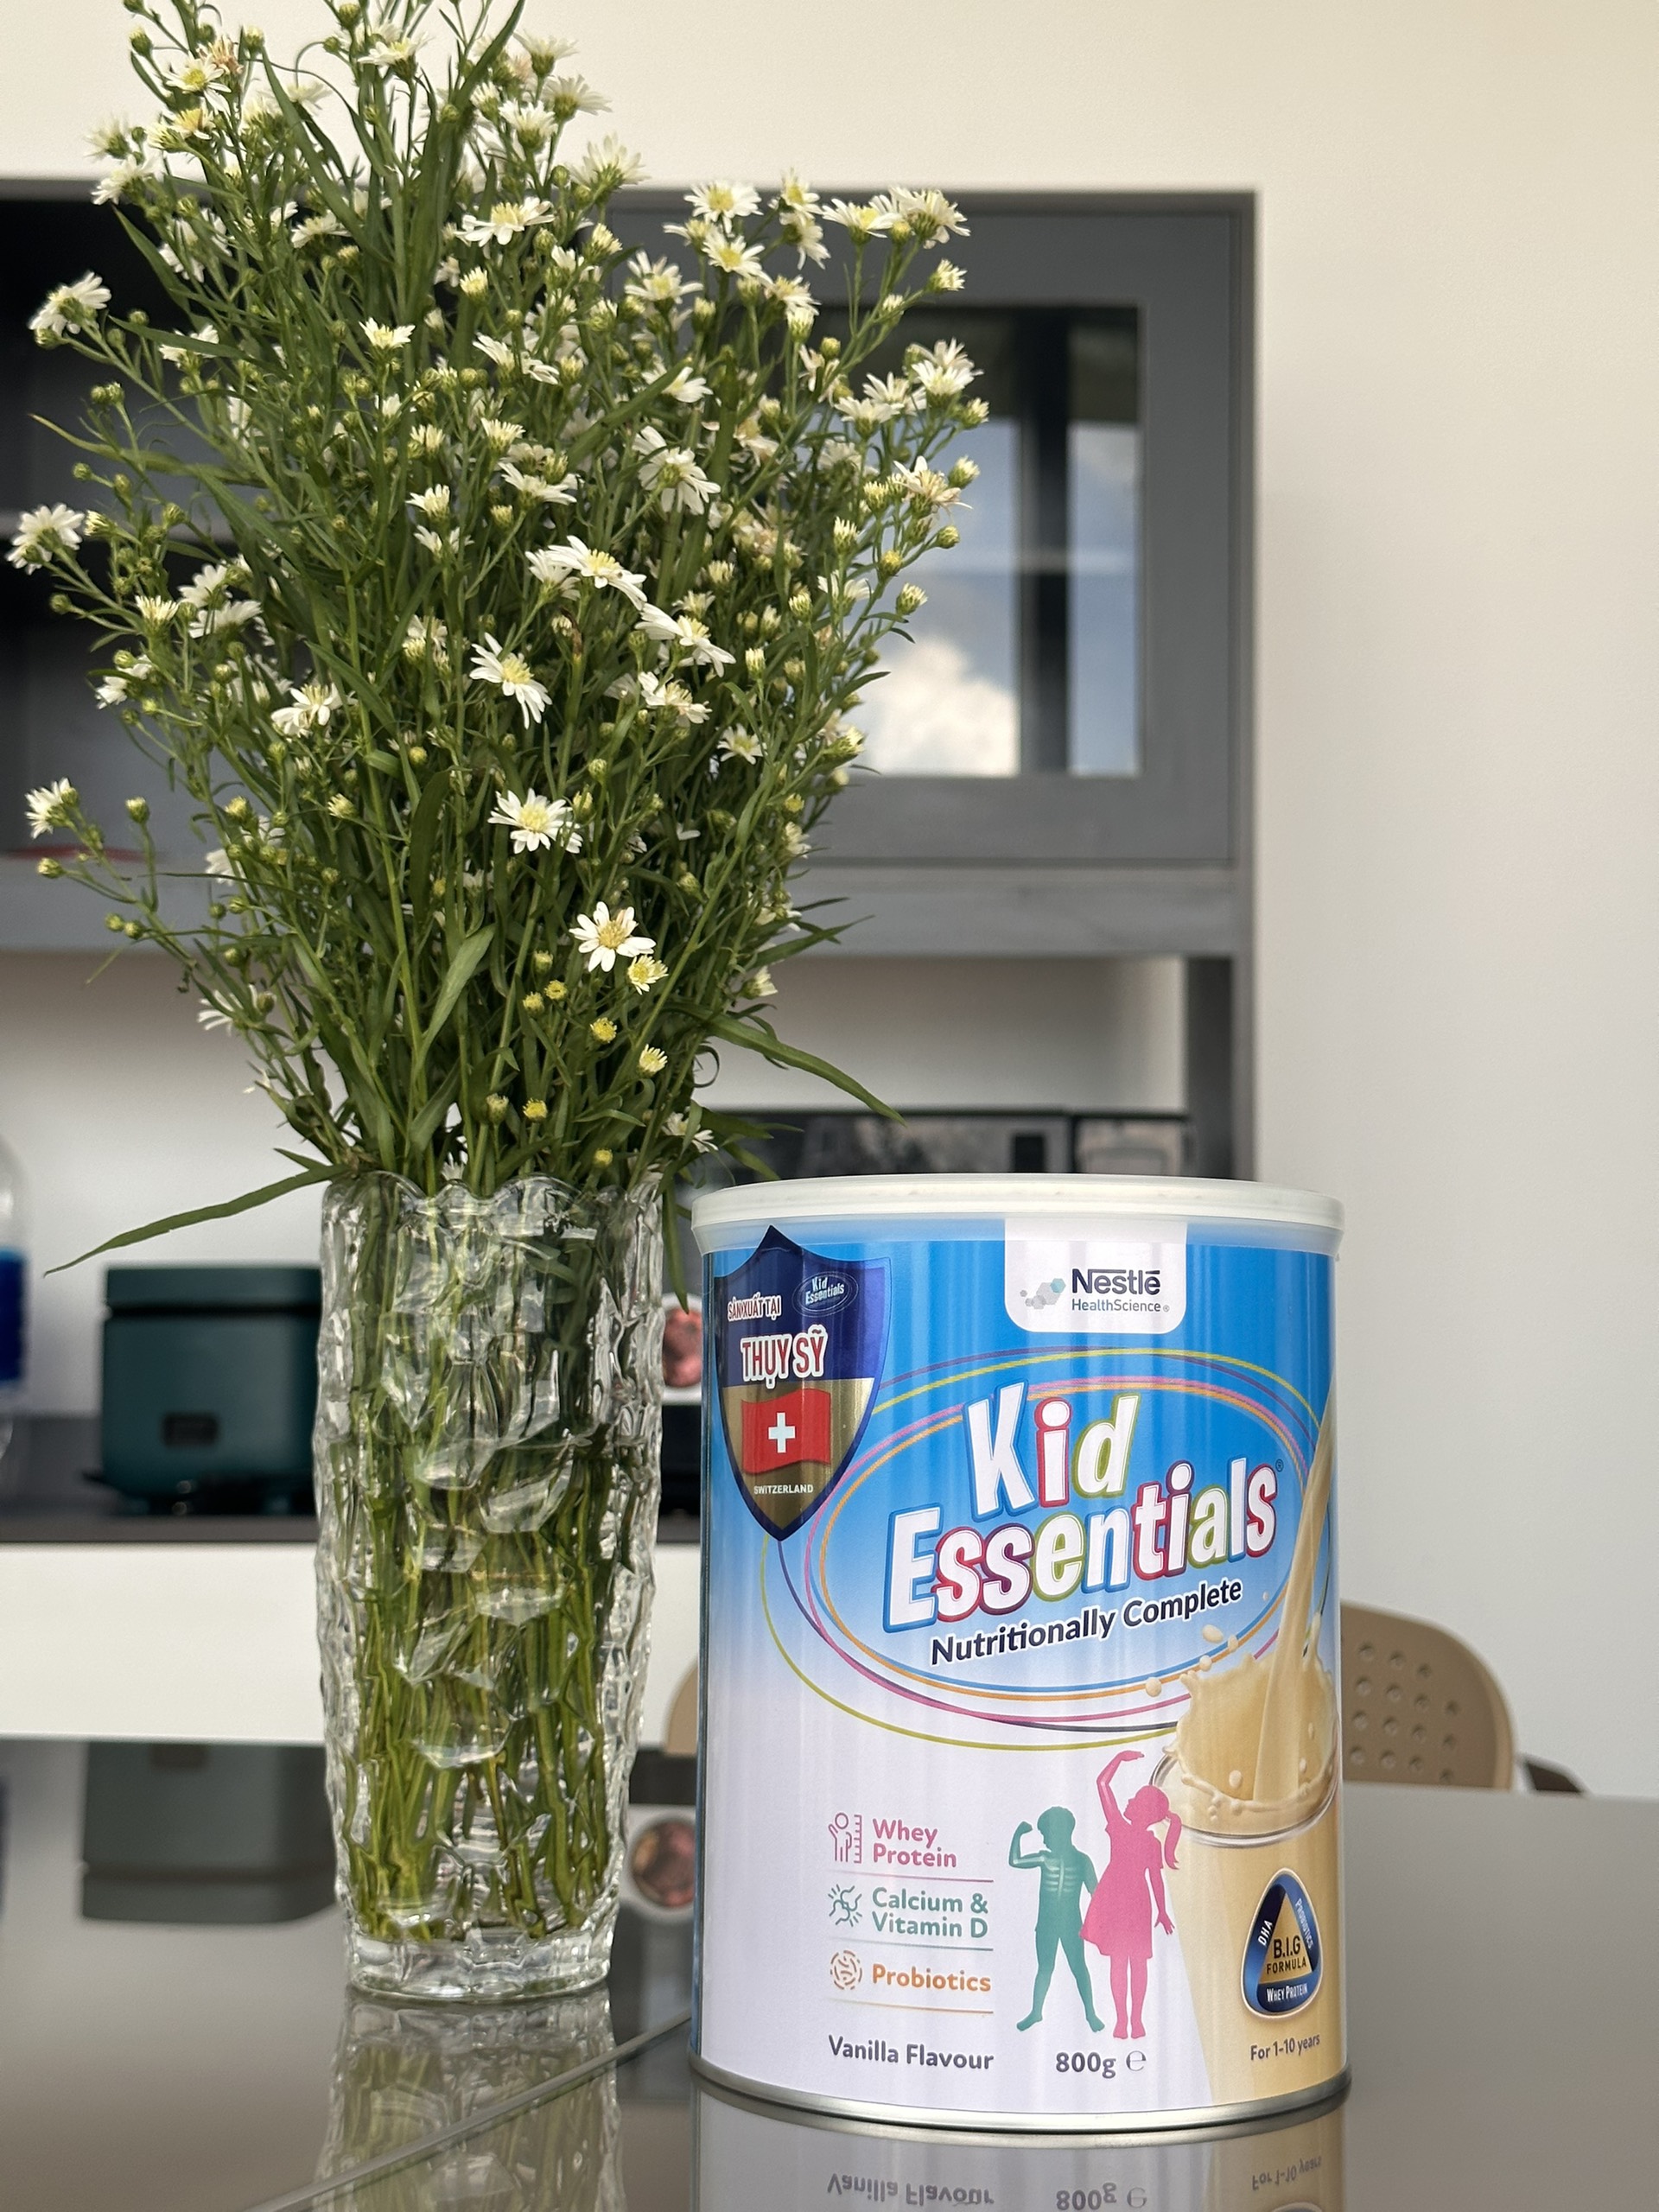 Combo 6 Lon Sữa Kid Essentials Cho Trẻ Biếng Ăn, Chậm Tăng Cân 800g - Bao Bì Mới [NHẬP KHẨU CHÍNH HÃNG]